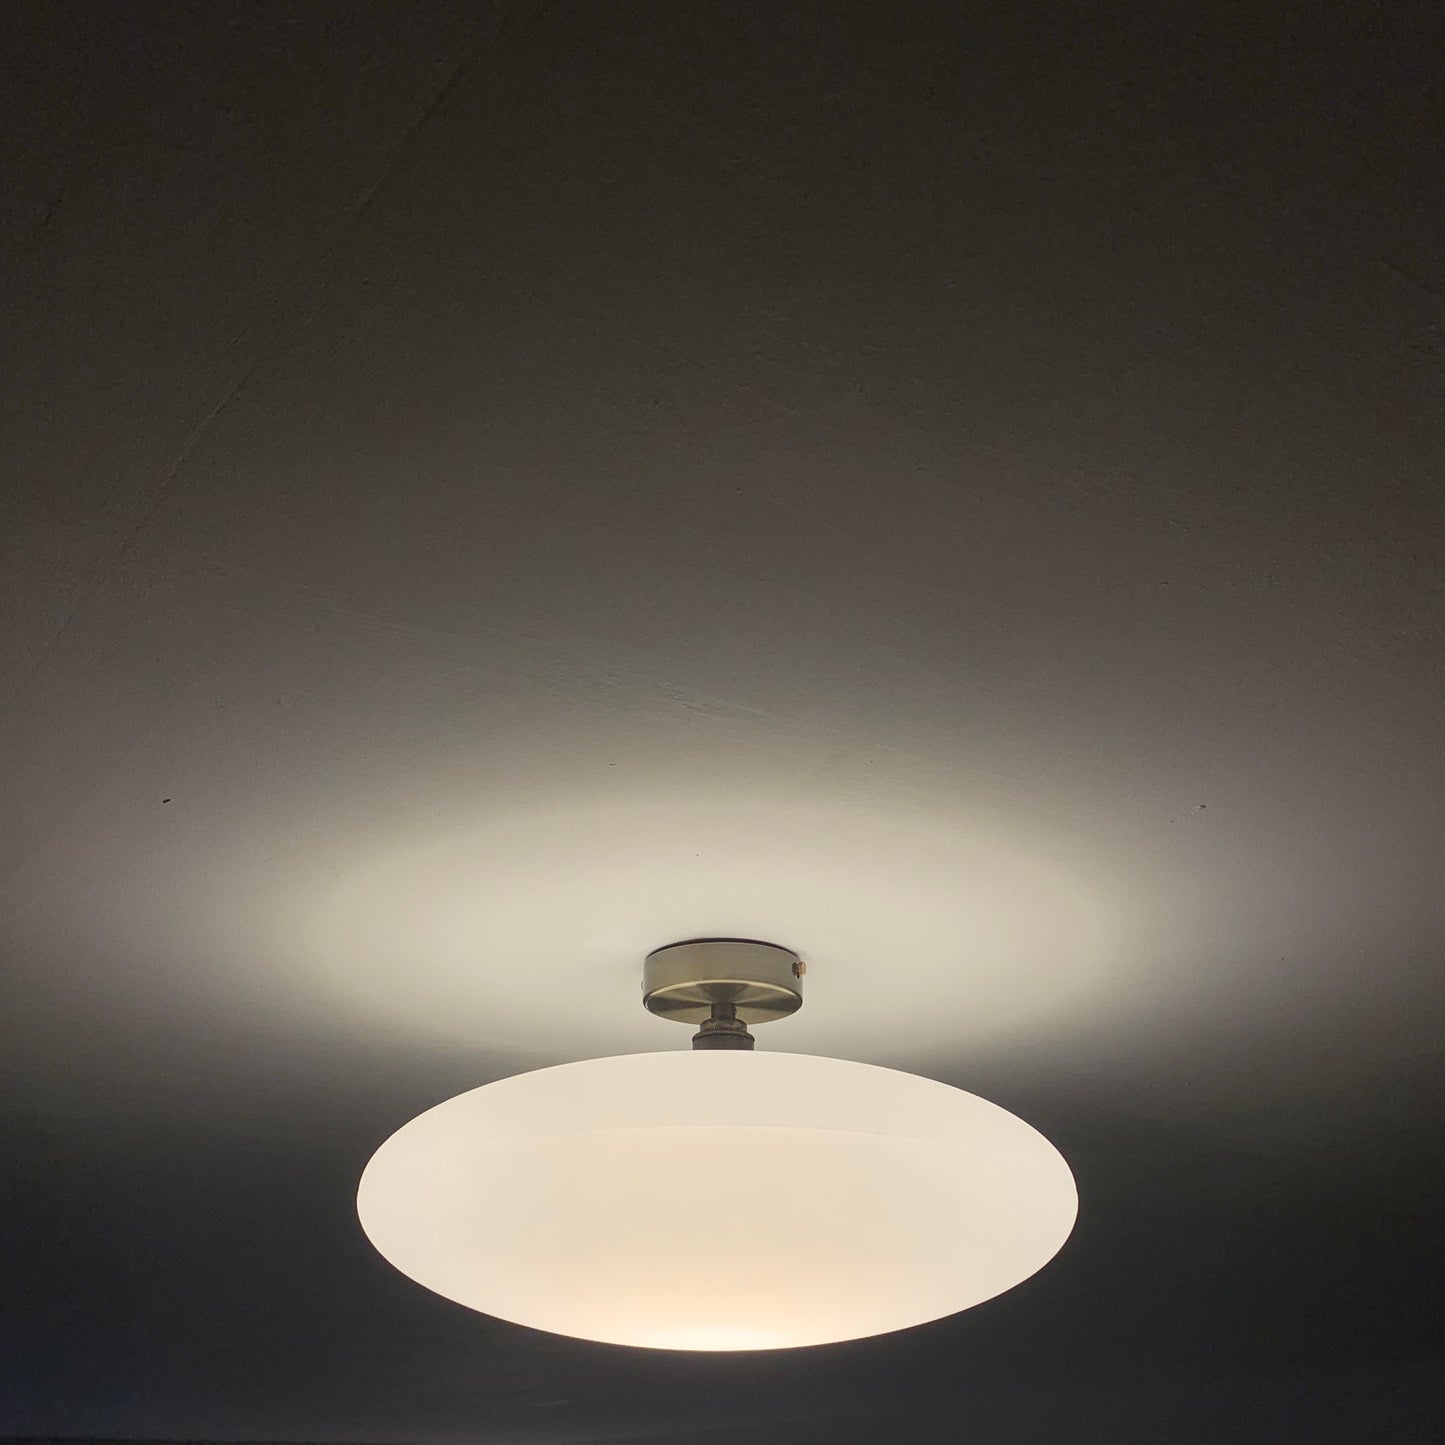 Flush ceiling light fitting